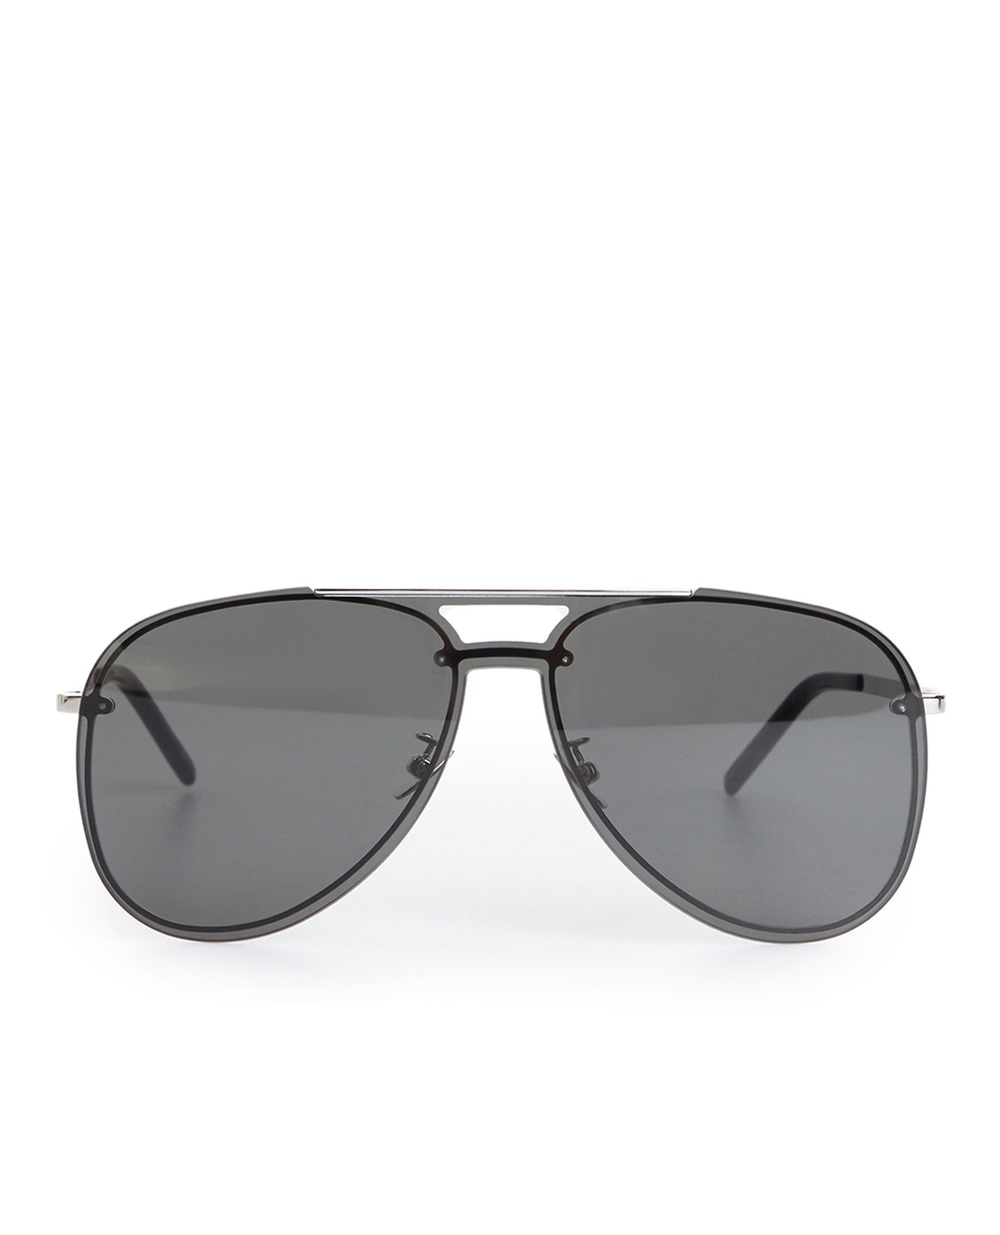 Солнцезащитные очки Saint Laurent SL 11 MASK-001, черный цвет • Купить в интернет-магазине Kameron